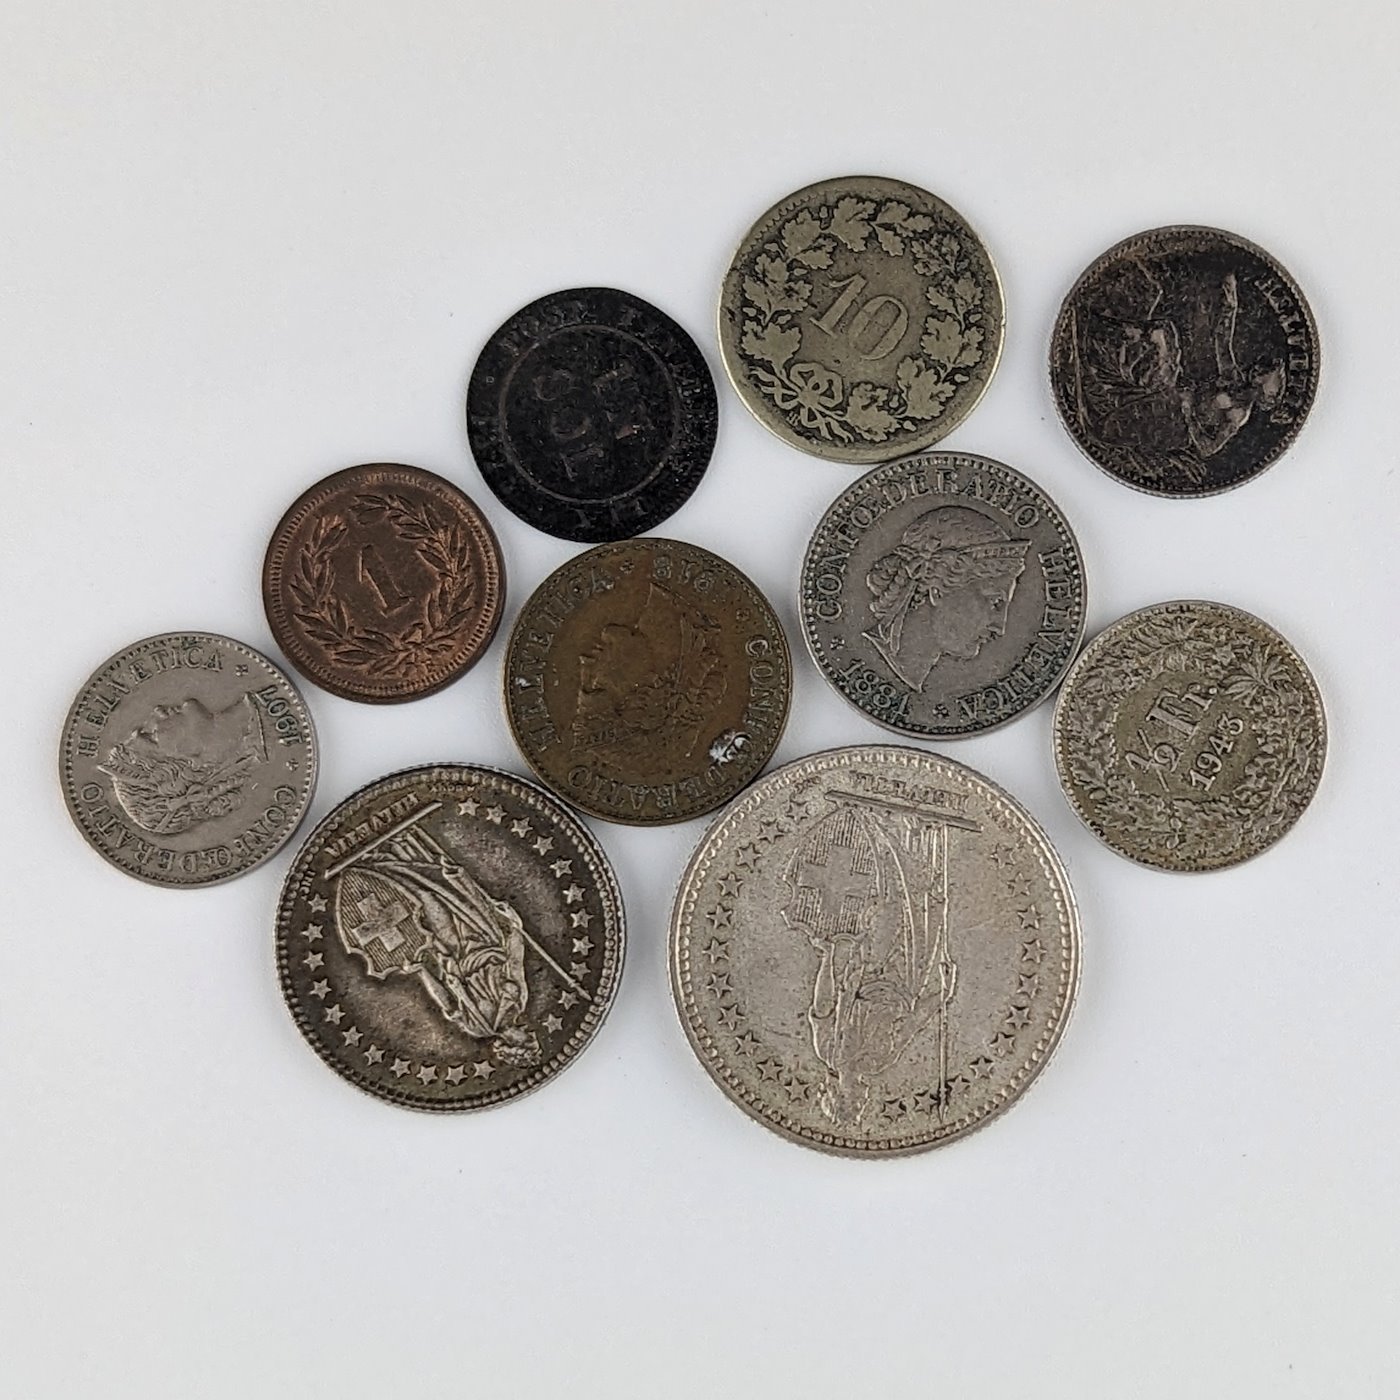 .. - Švýcarsko stříbrné 2,1,1/2 franky a 6 mincí obený kov ukázka mincí od 19.století